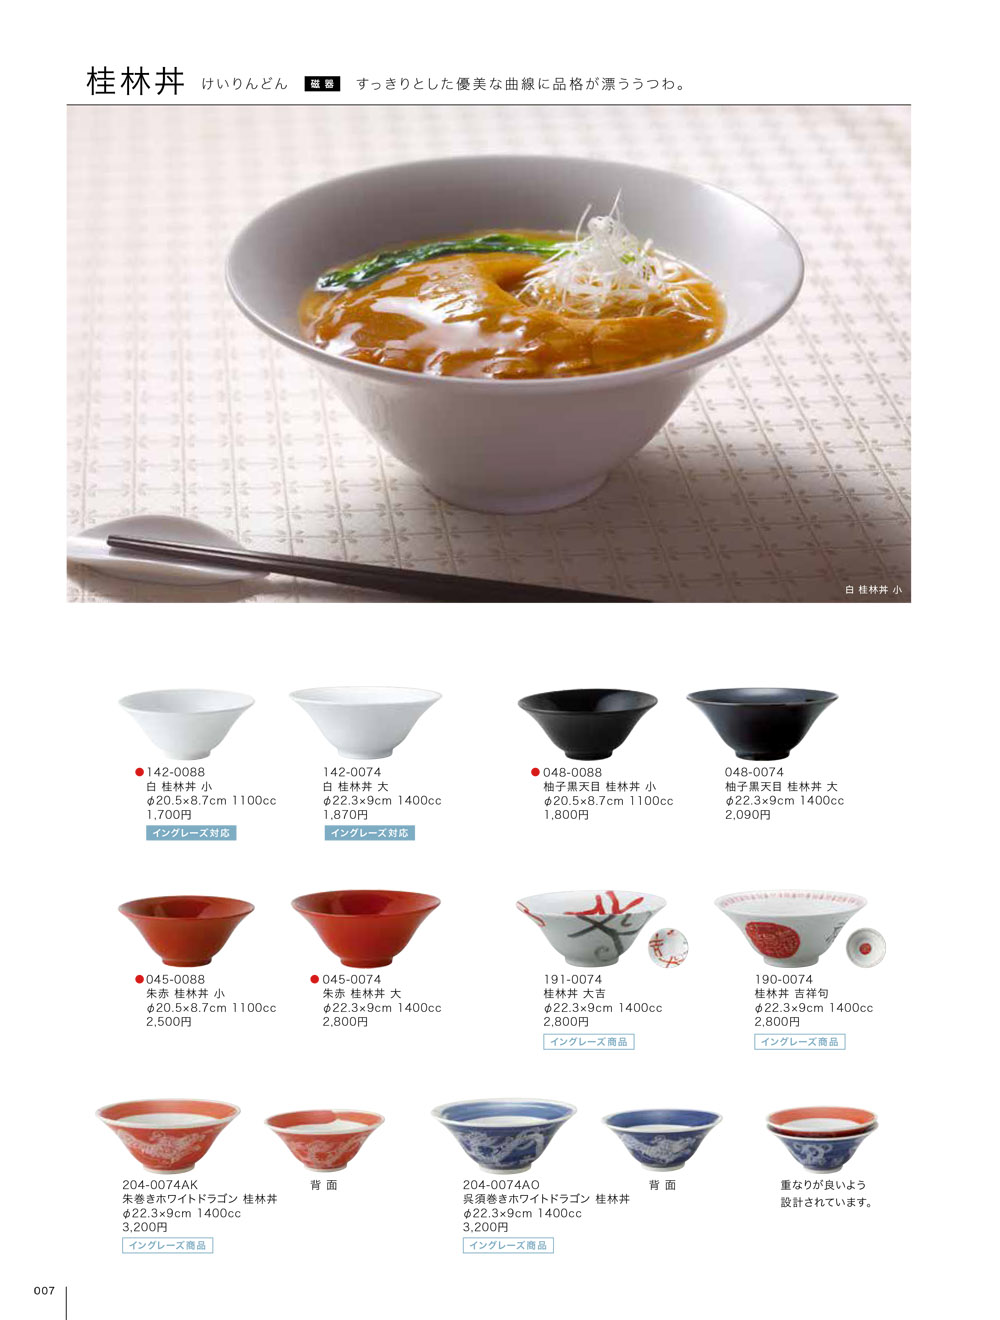 昭和製陶 vol17 ページ一覧 | 食器カタログ.com